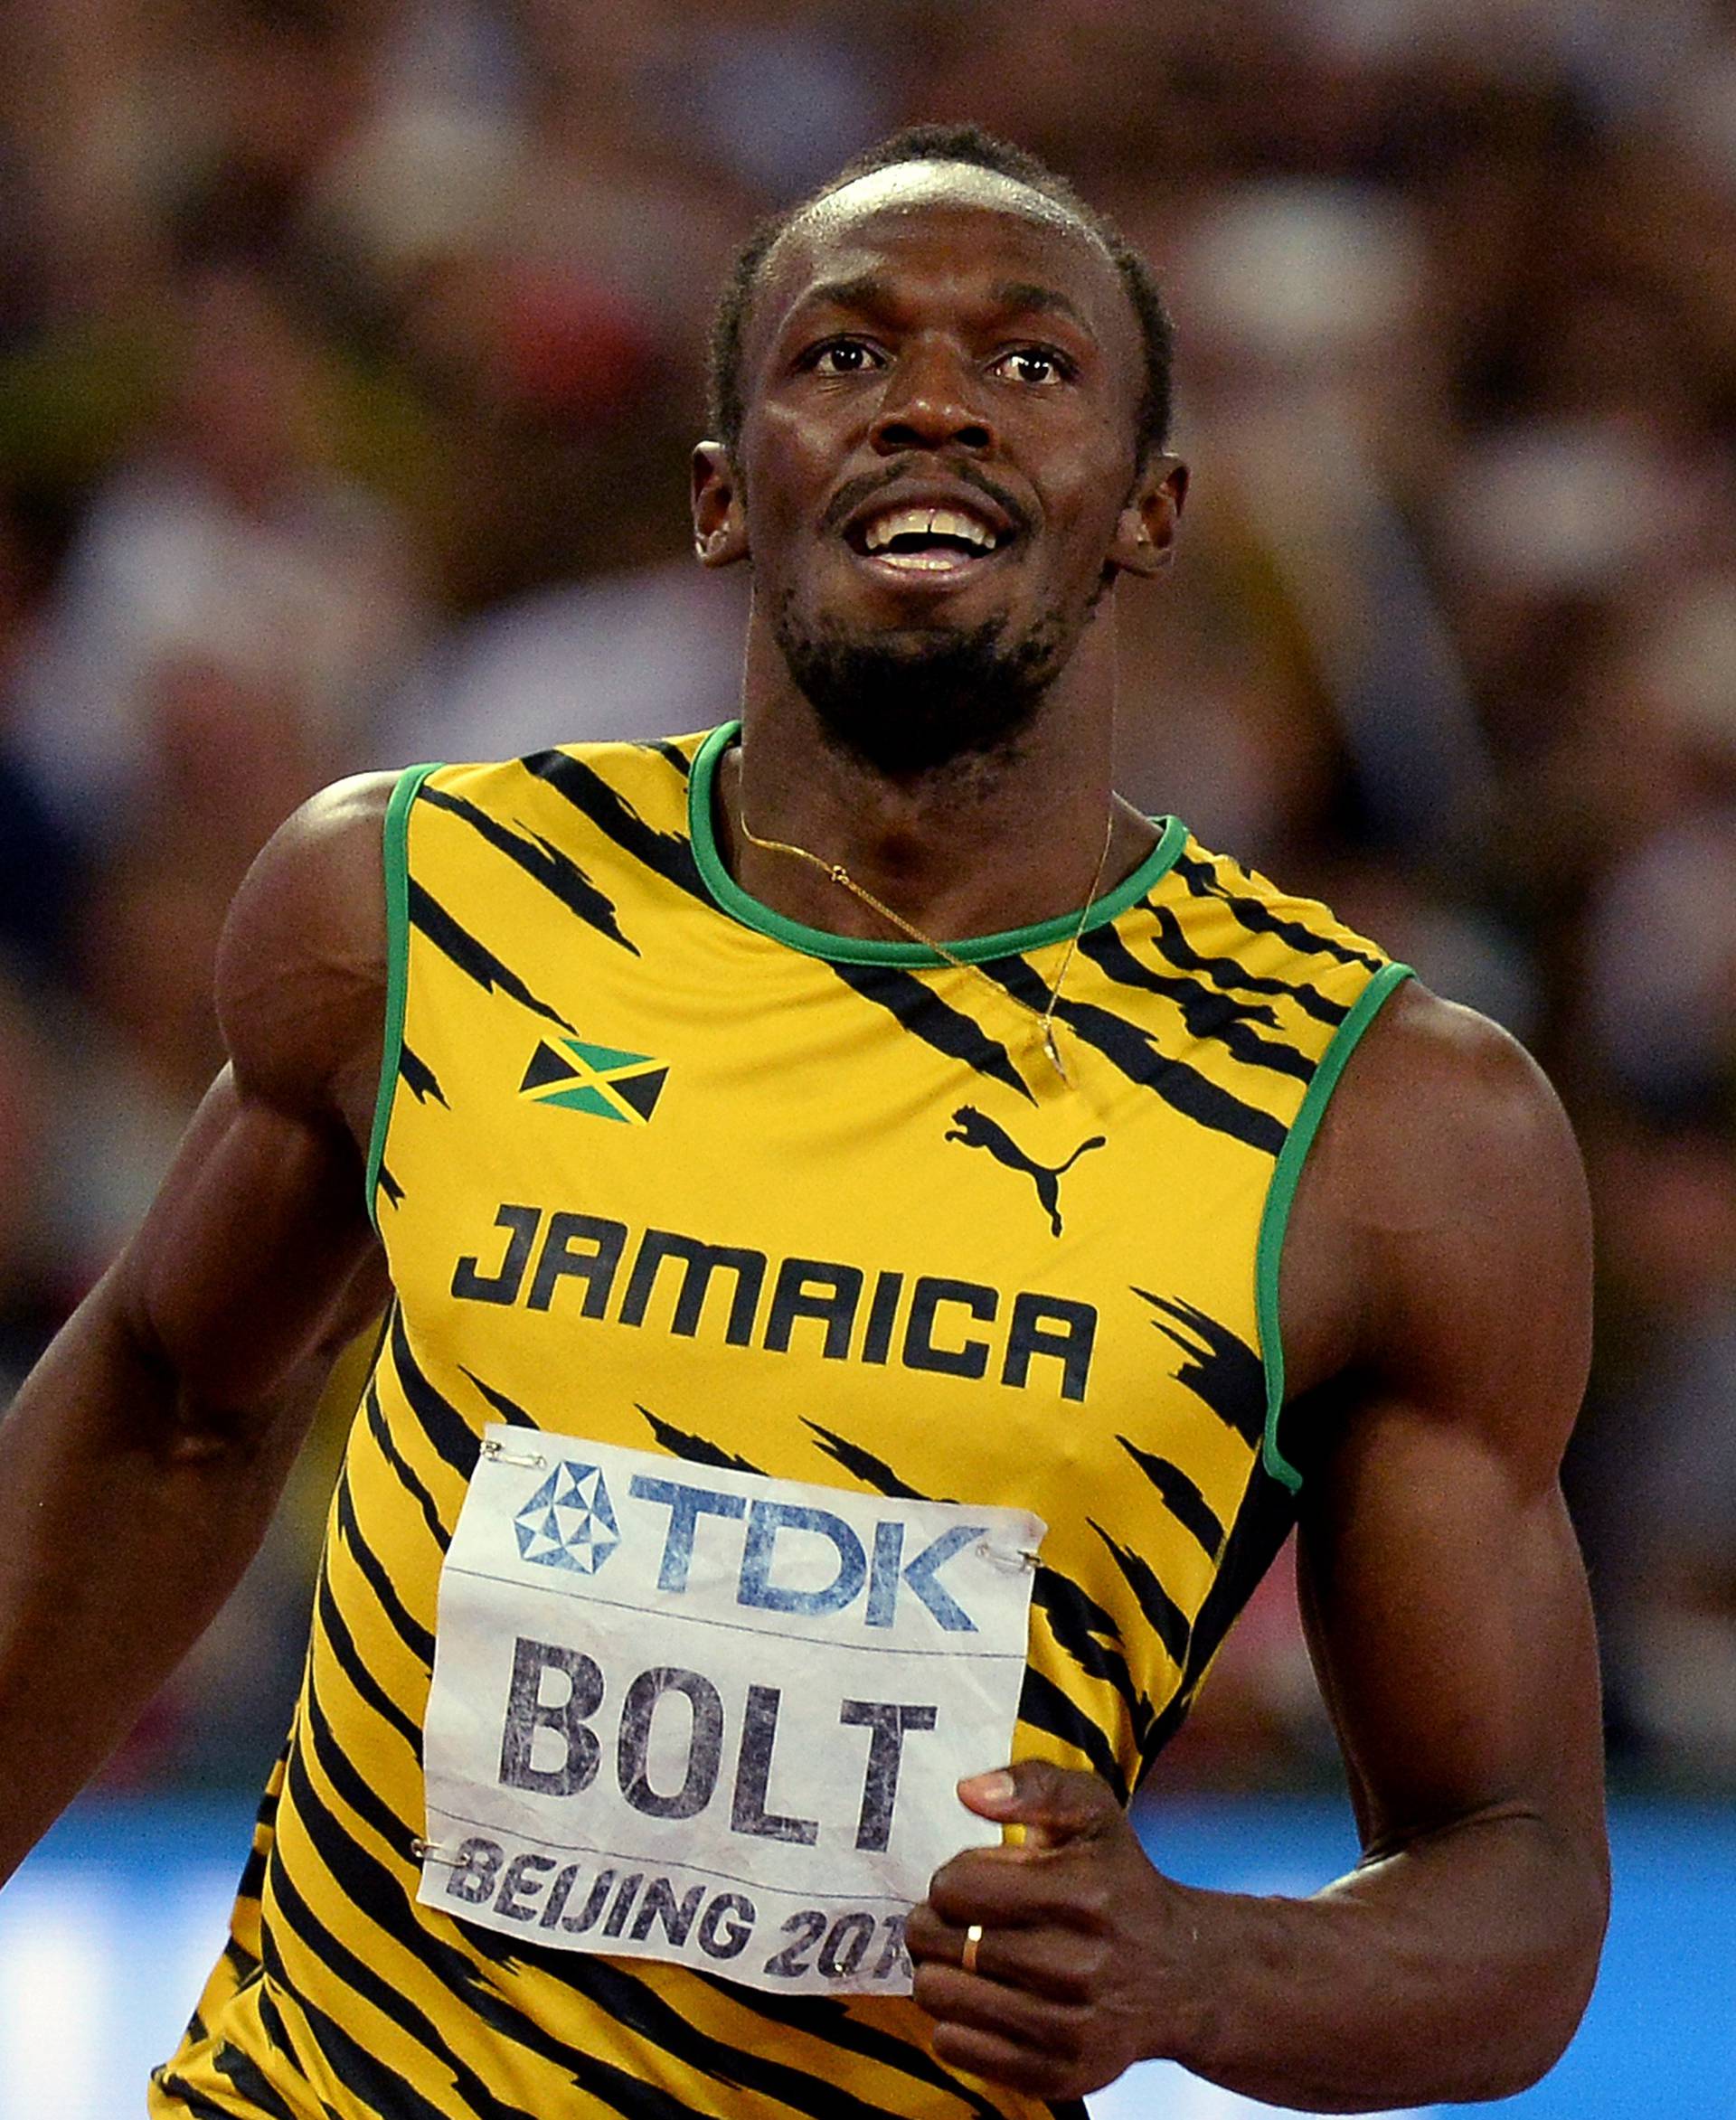 Konačno: Usain Bolt predvodi Jamajčane na Igrama u Riju